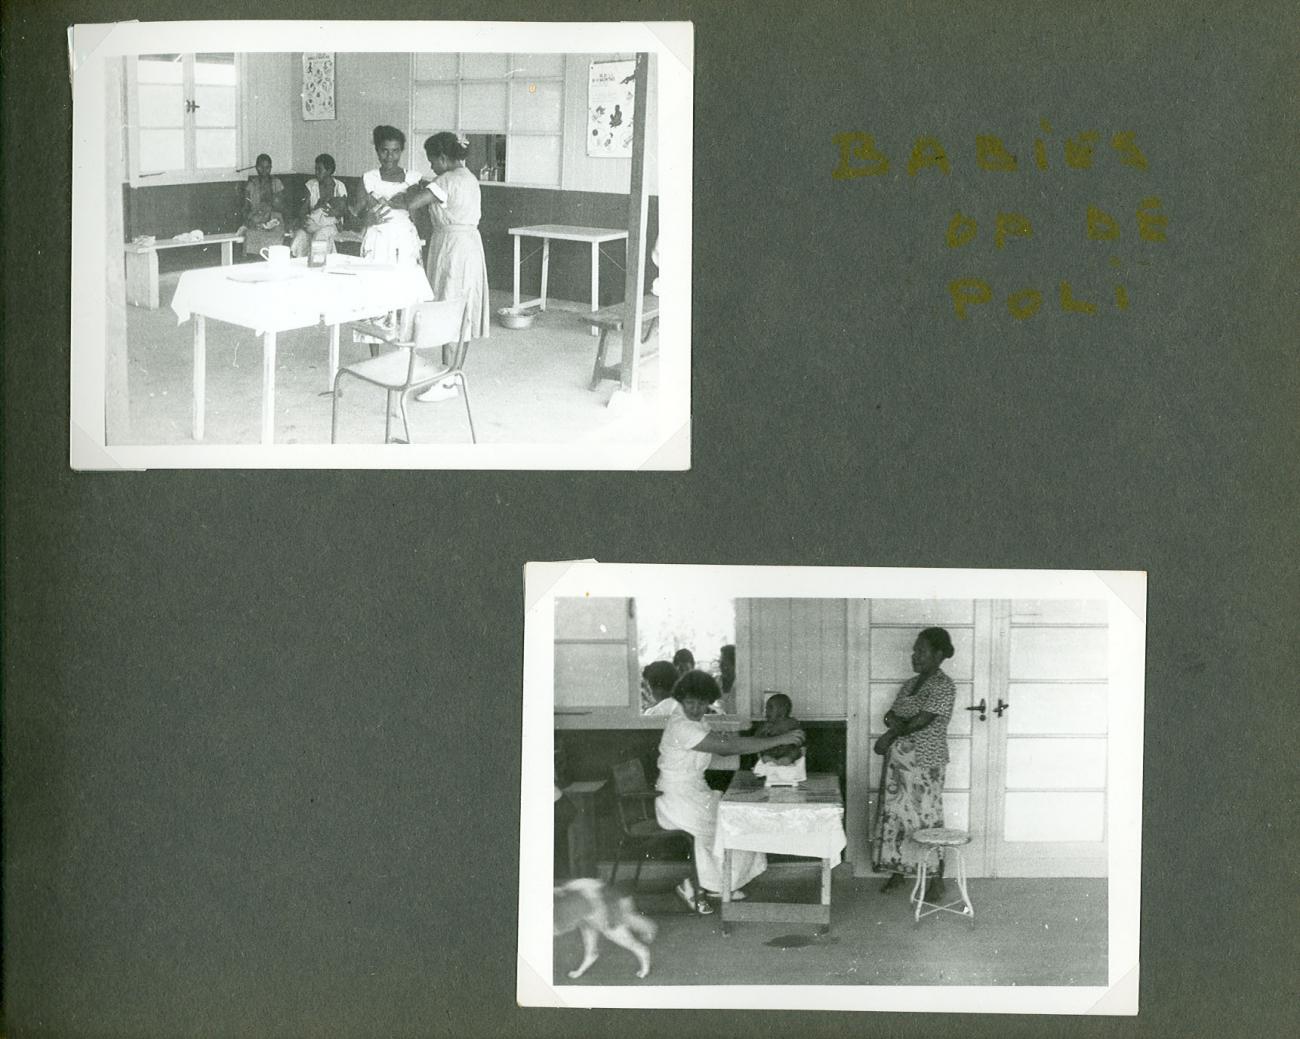 BD/83/108 - 
Moeder- en kindzorg in hetziekenhuis van Sarmi
